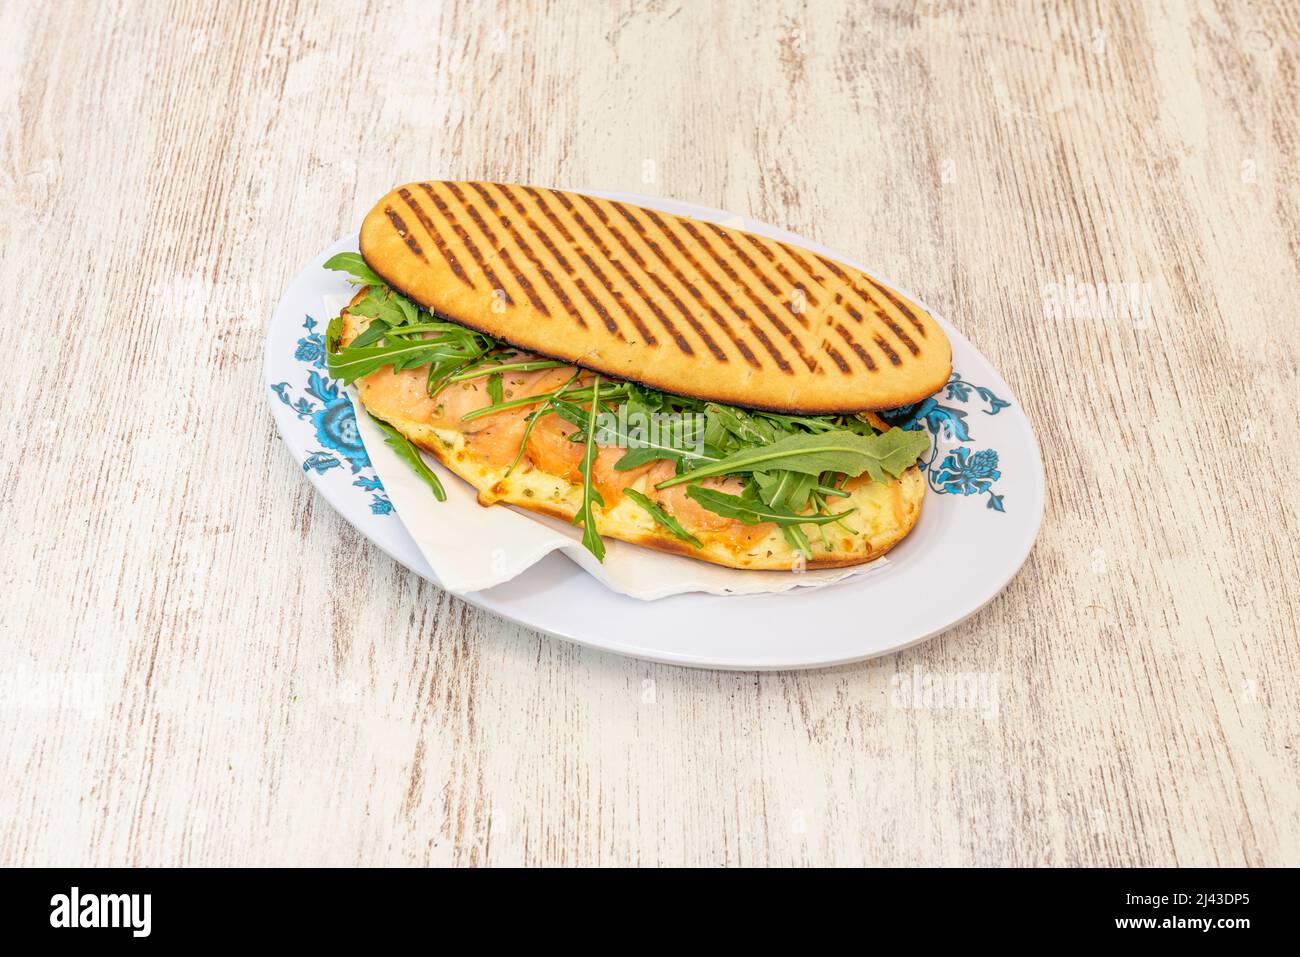 Le panini ou le panino est une variété de sandwich d'origine italienne, qui a une distribution internationale. Un panino est habituellement fait avec un petit rouleau ou p Banque D'Images